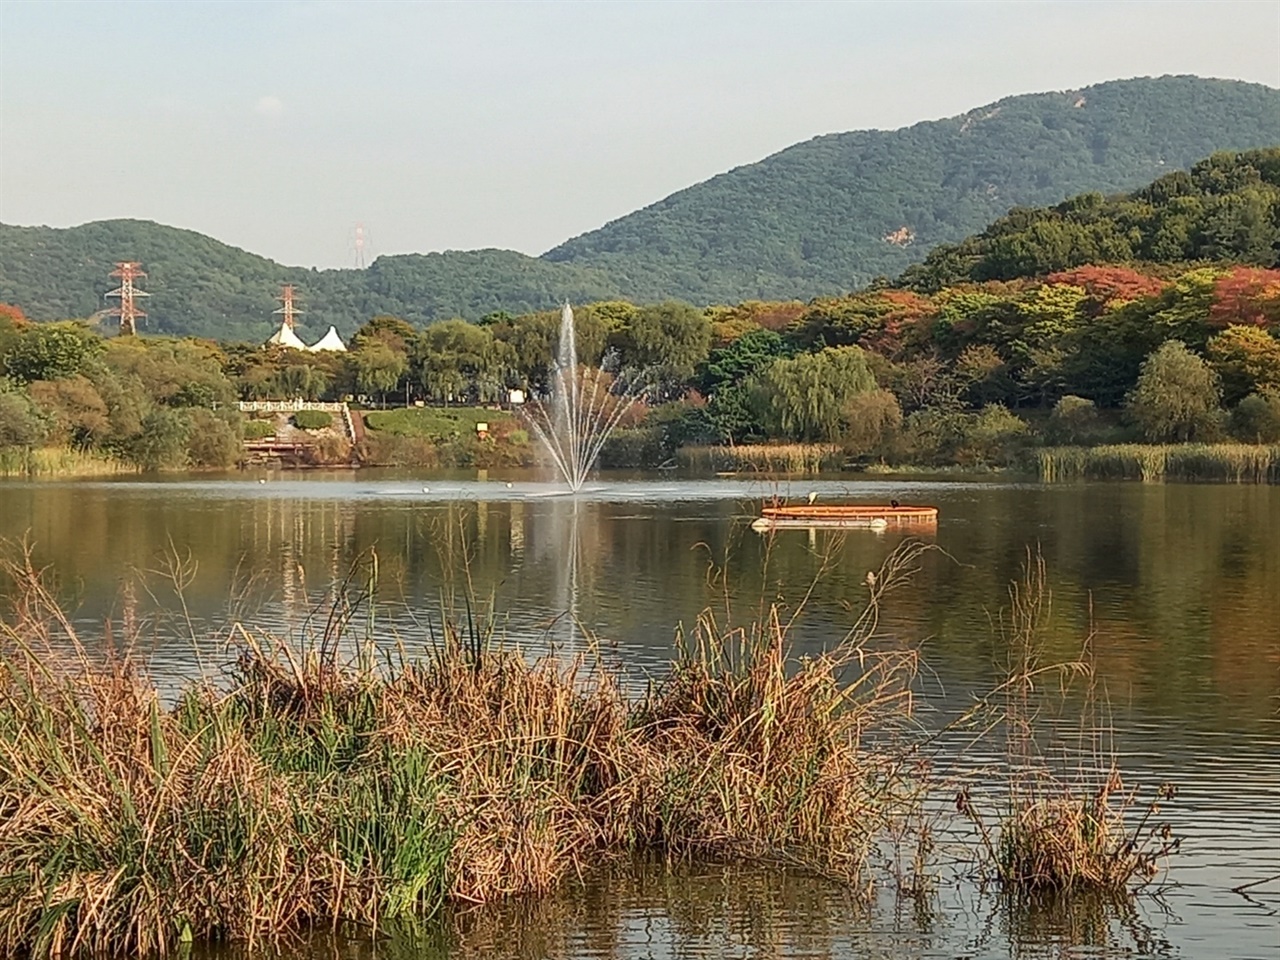 인천대공원의 호수. 규모는 작지만 제법 운치가 있다. 가을이 성큼 다가온 느낌이다.